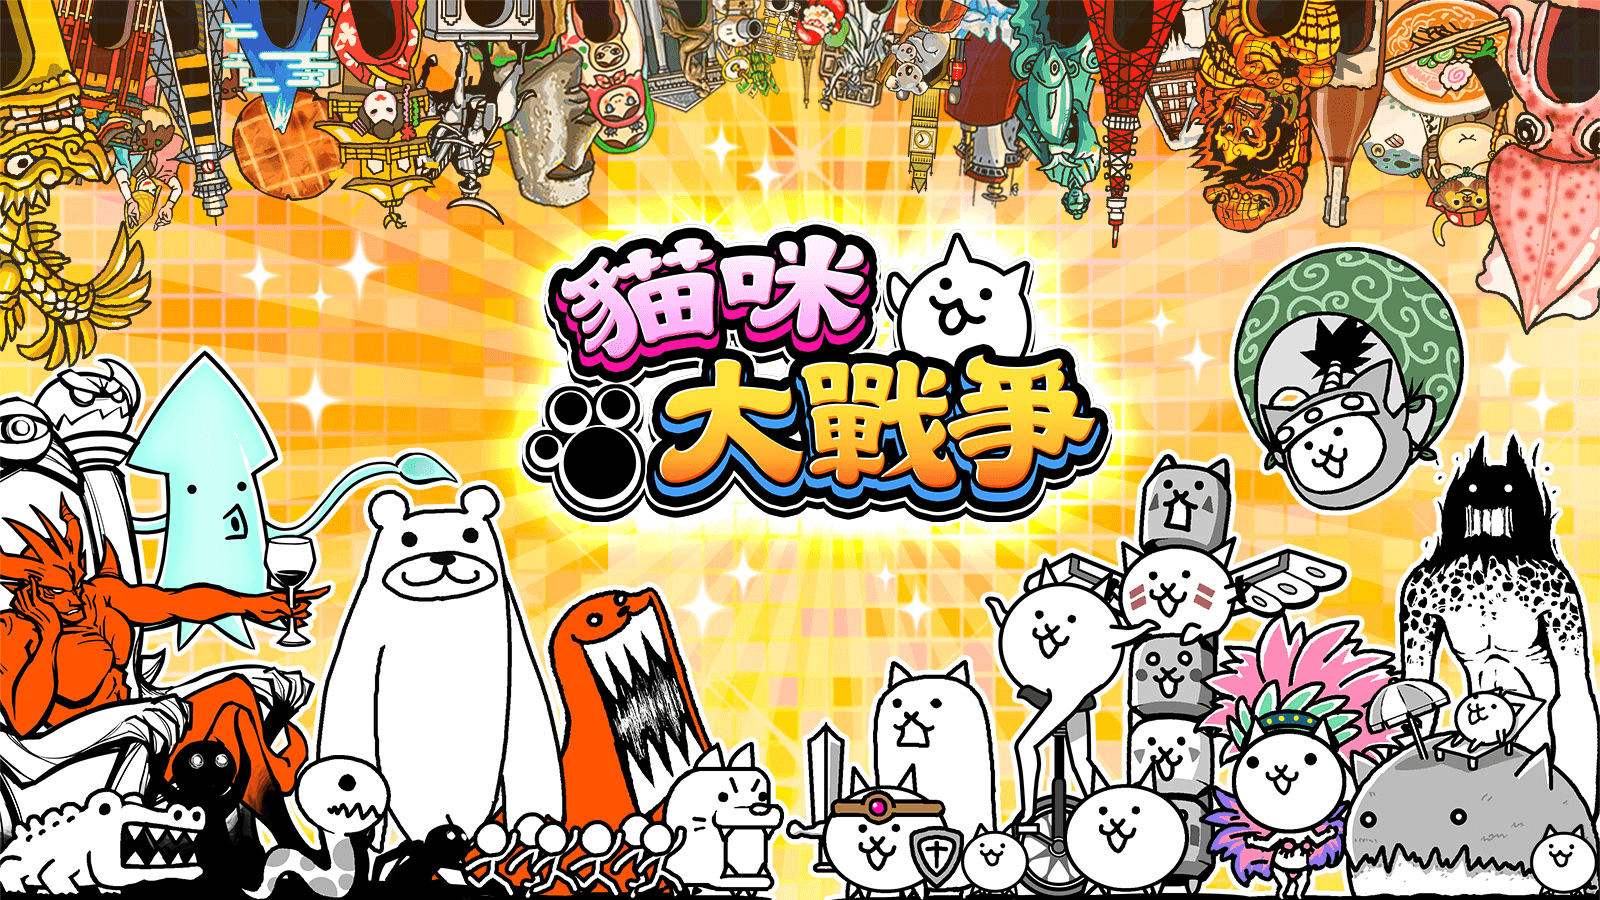 unnamed 1 - 【修改版】貓咪大戰爭 11.5.0 無限貓罐頭、快速召喚貓咪